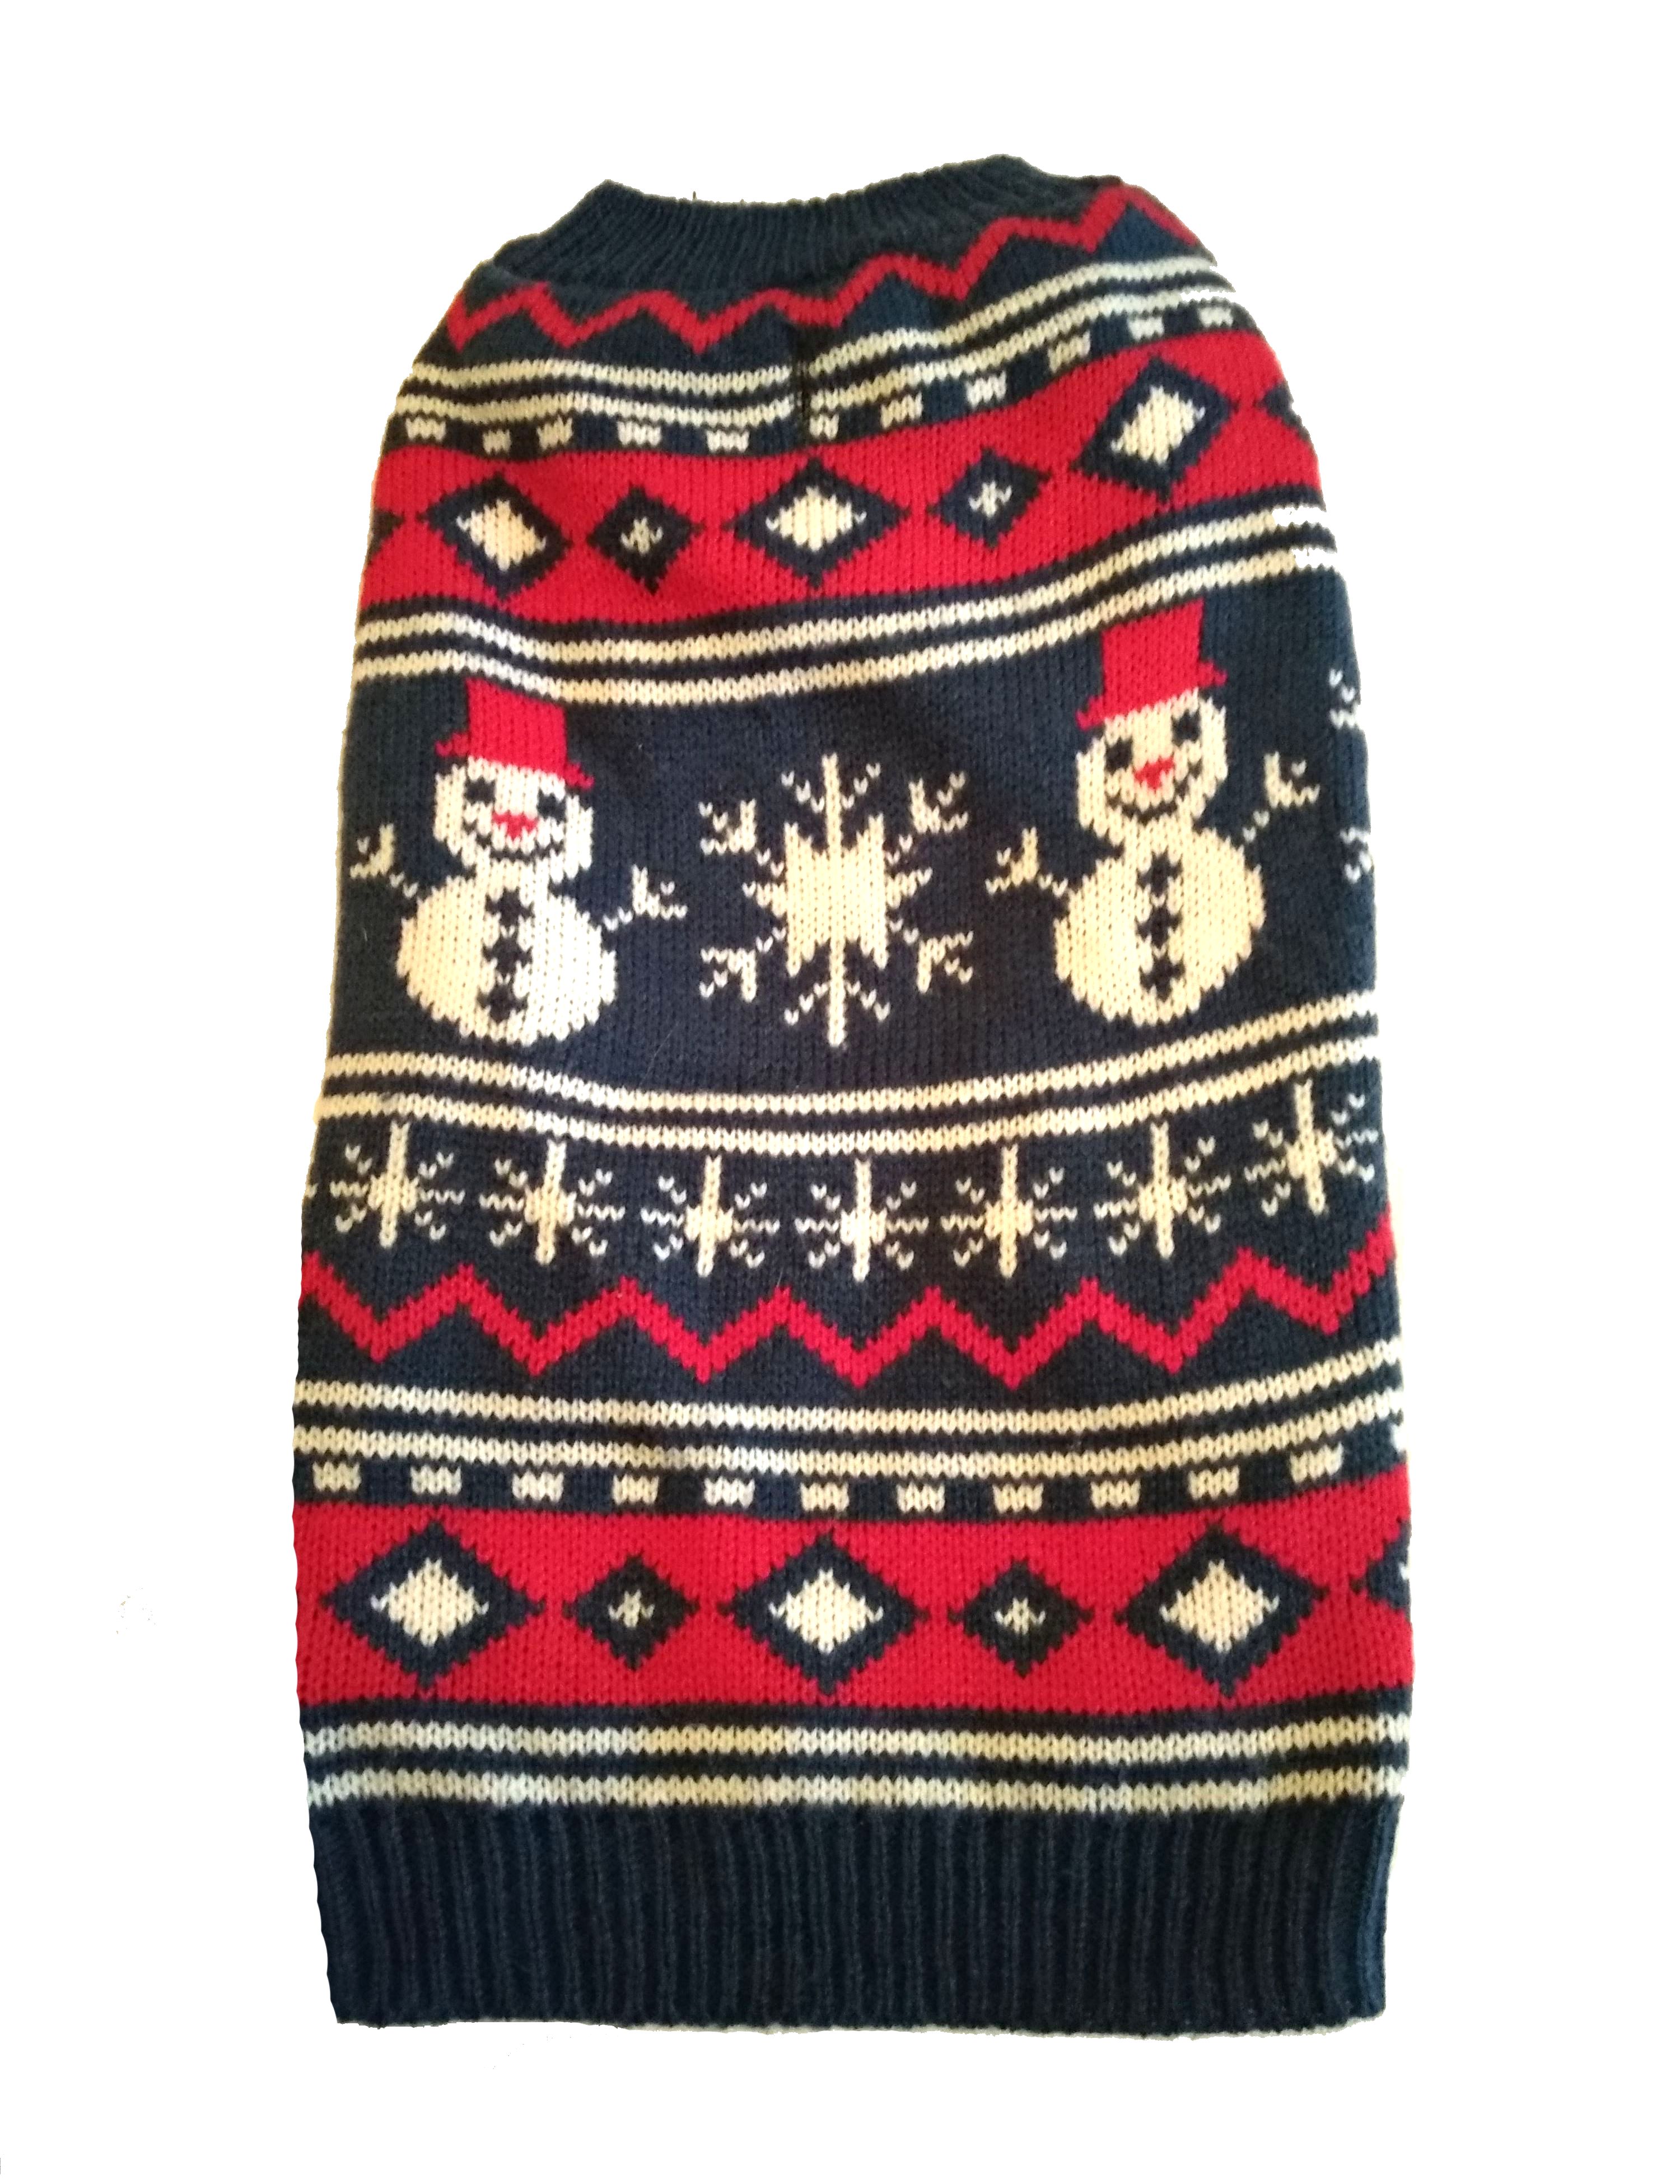 Karácsonyi kutyaruha, kötött pulóver. Háthossz 33 cm. 